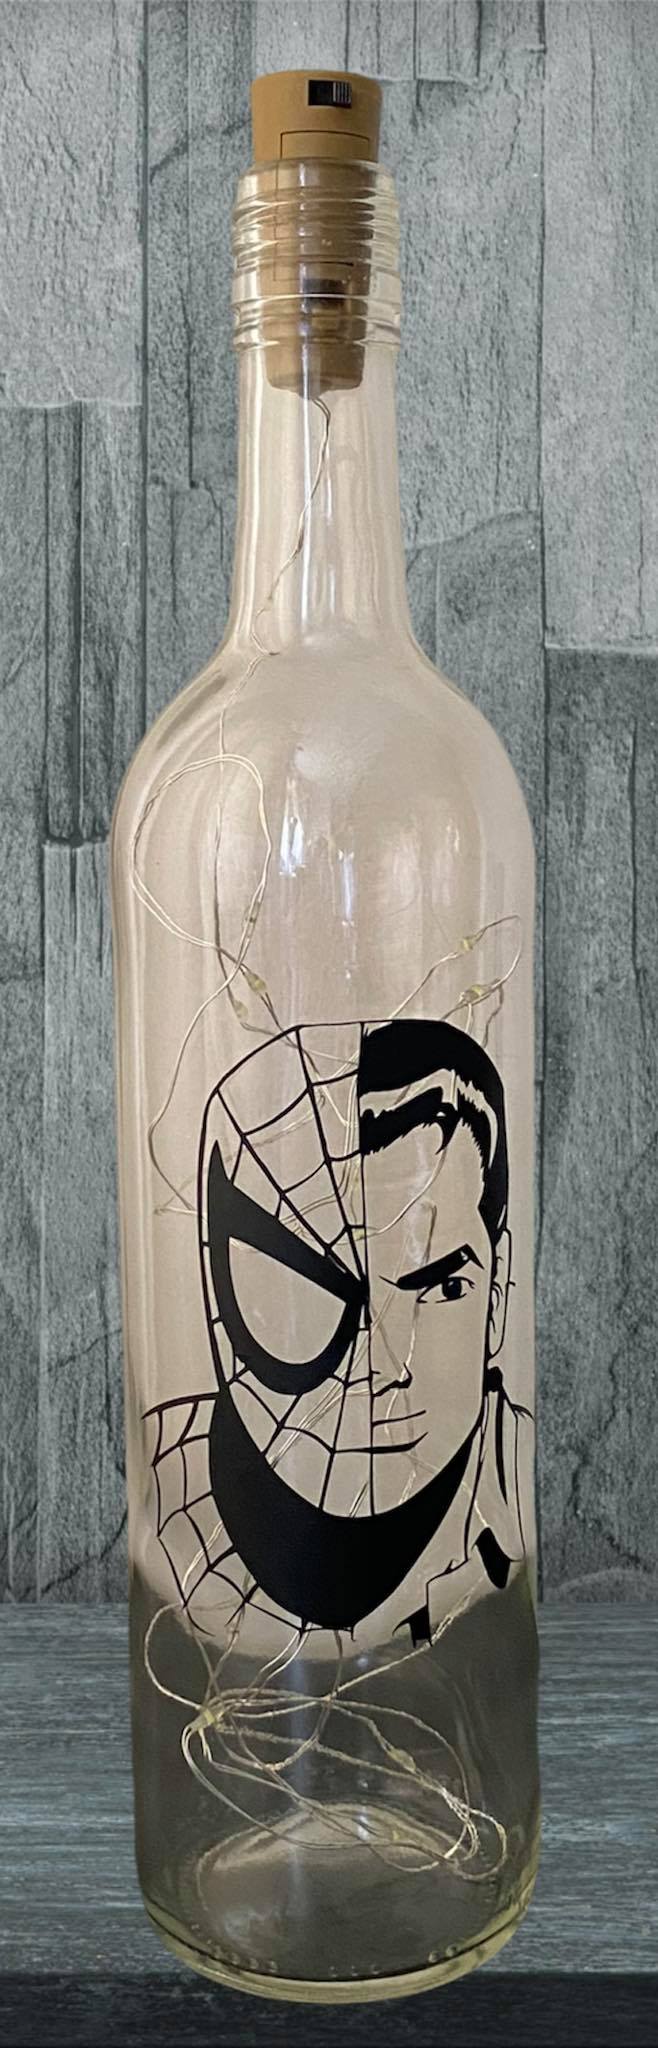 Spiderman/Peter Parker Light Up Bottle